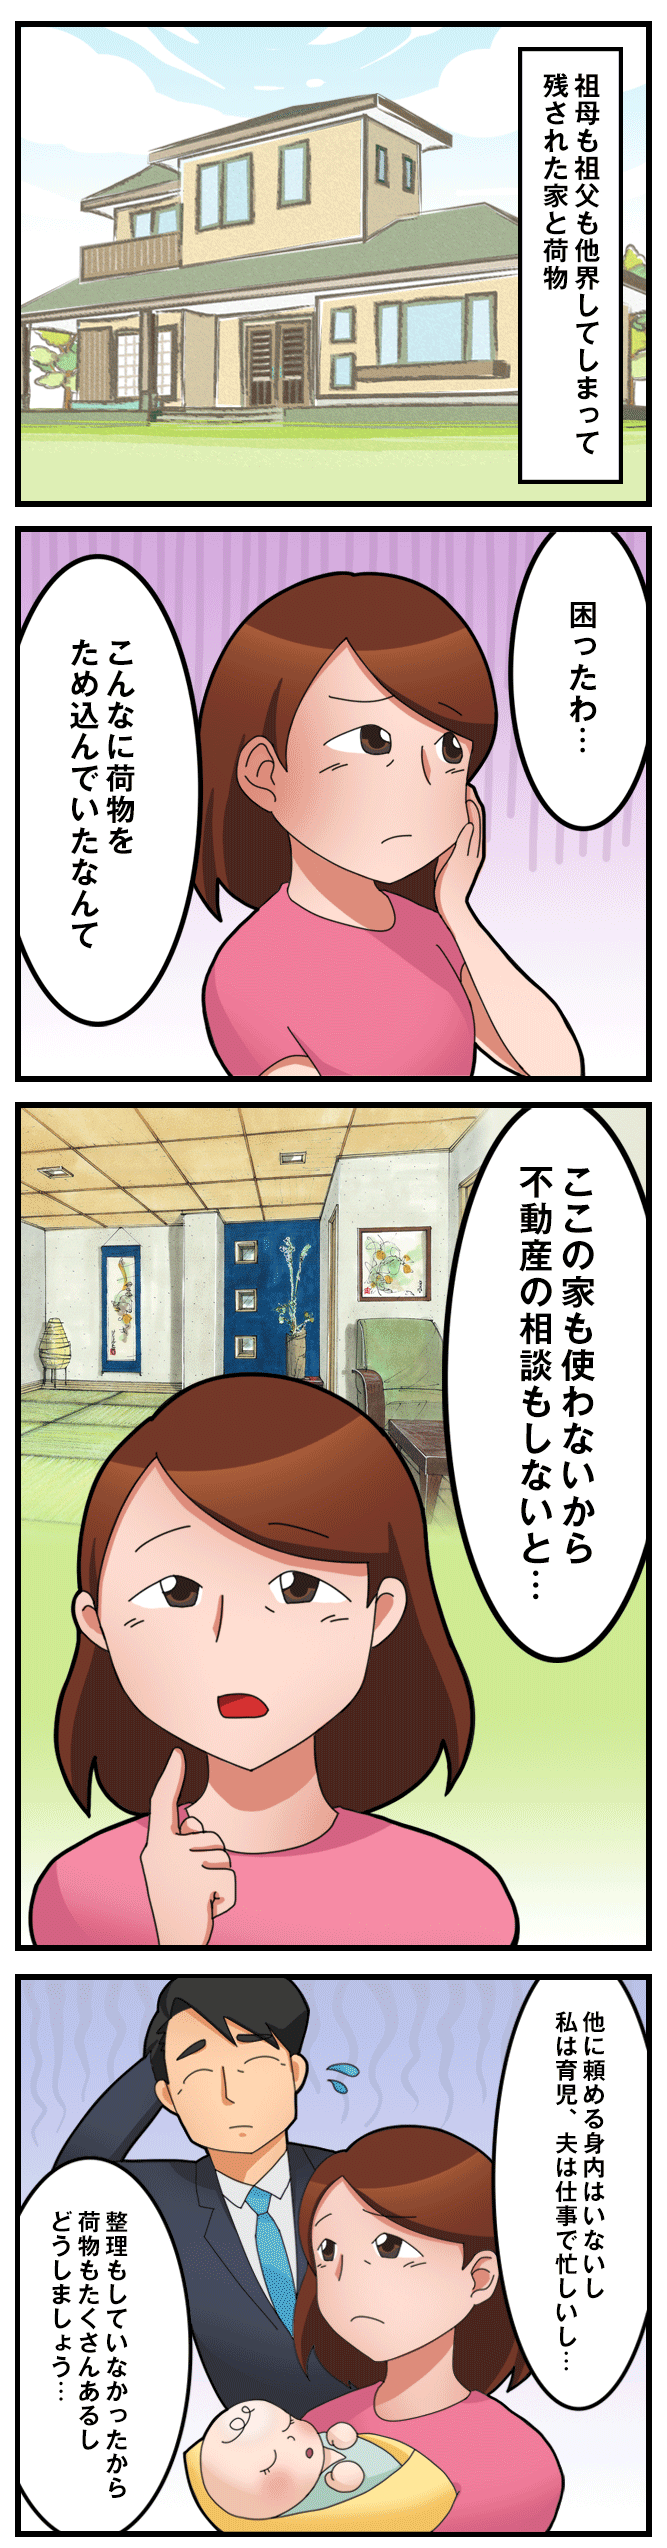 遺品整理の漫画 01